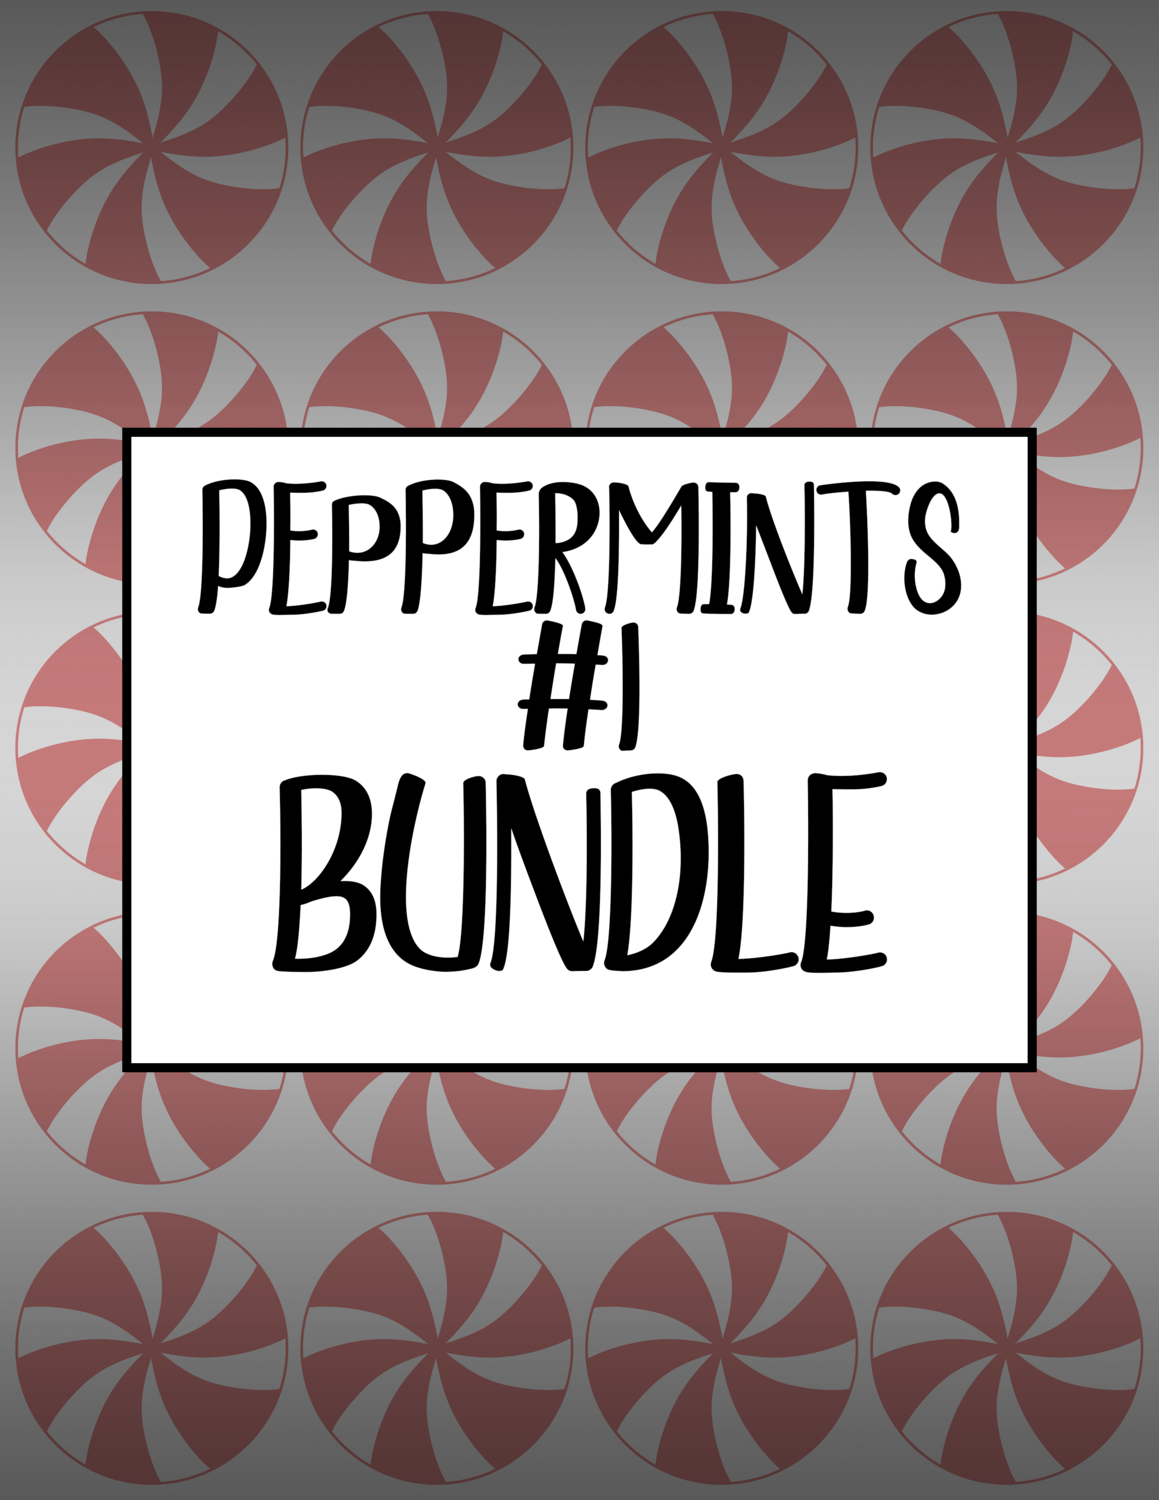 Bundle #44 Peppermints #1